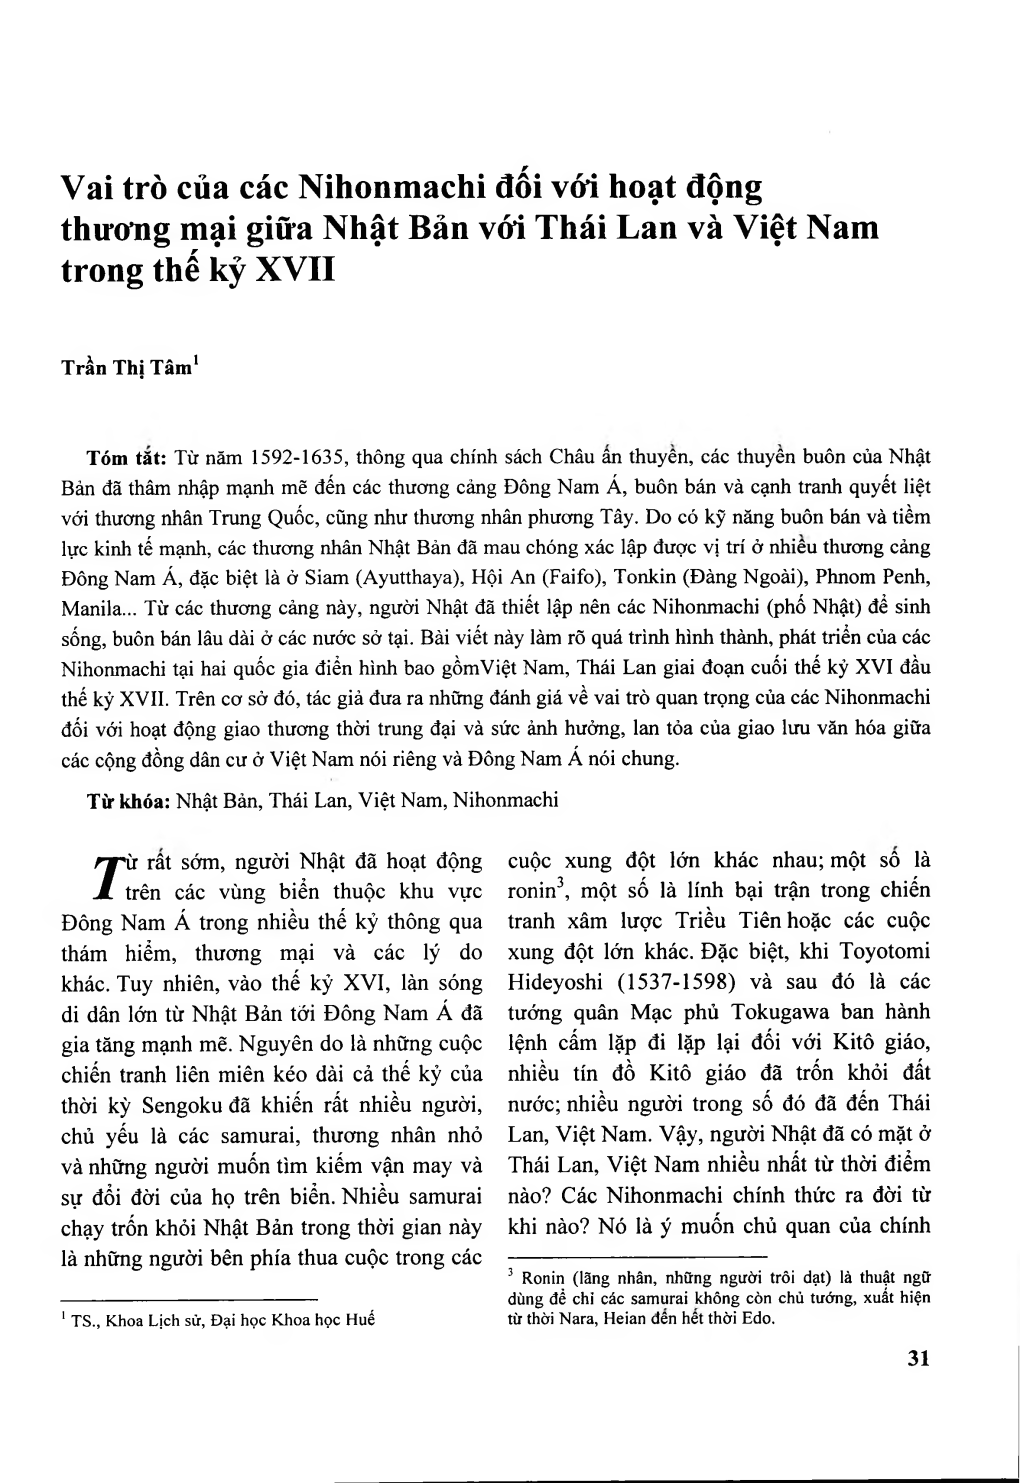 Vai Trò Của Các Nihonmachi Đối Với Hoạt Động Thưoìig Mại Giữa Nhật Bản Vói Thái Lan Và Việt Nam Trong Thế Kỷ XVII